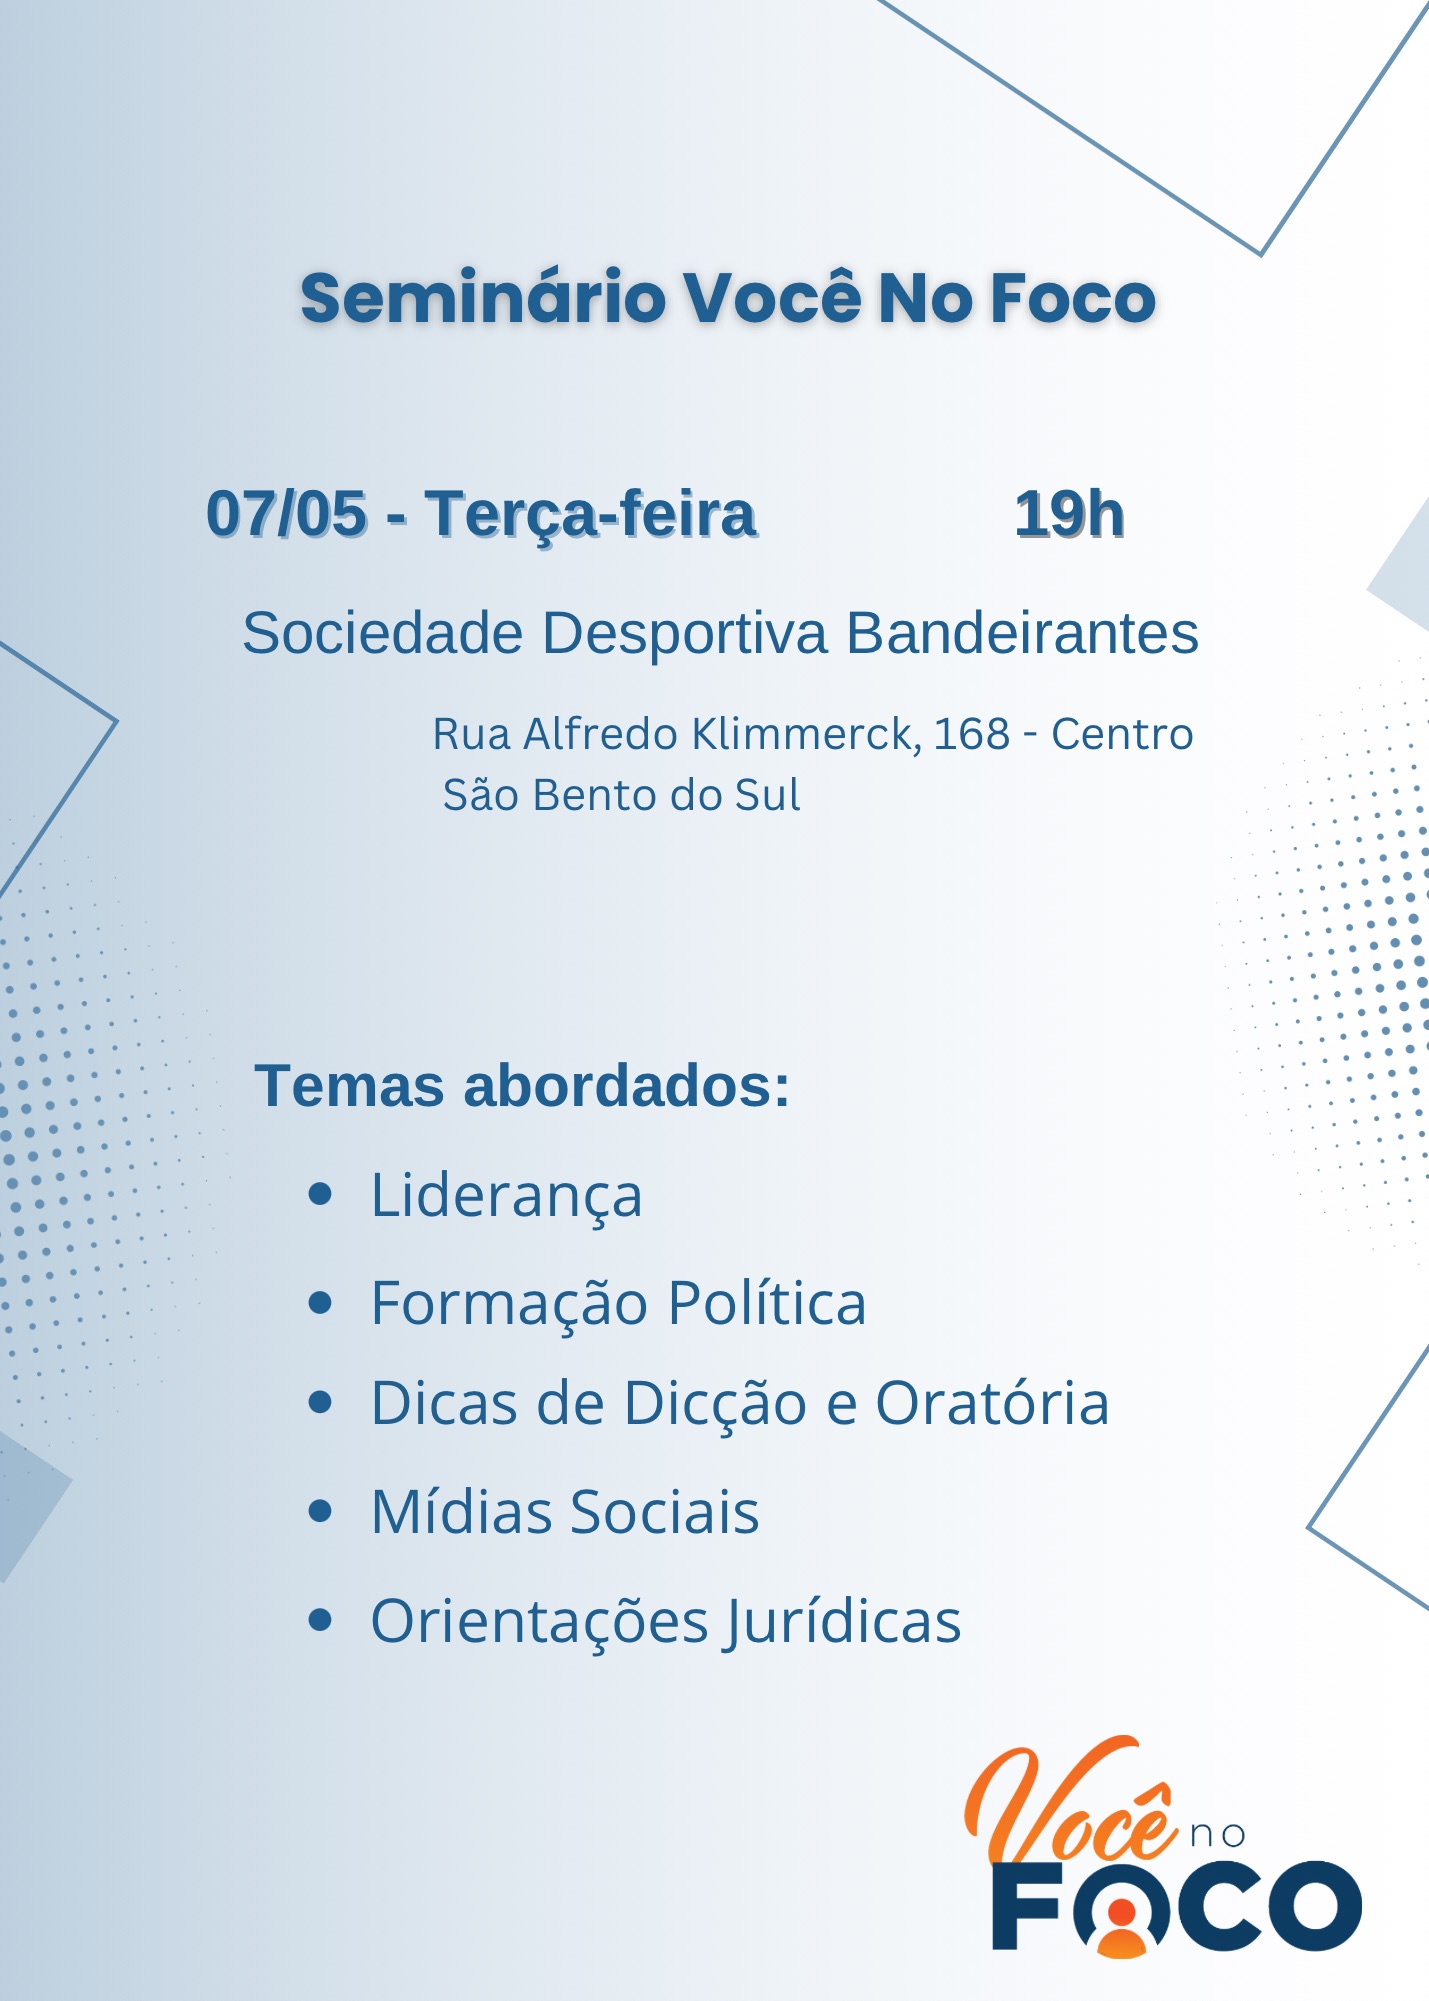 Seminário Regional “Você no Foco” promovido pelo Deputado Mauro de Nadal acontece em São Bento do Sul